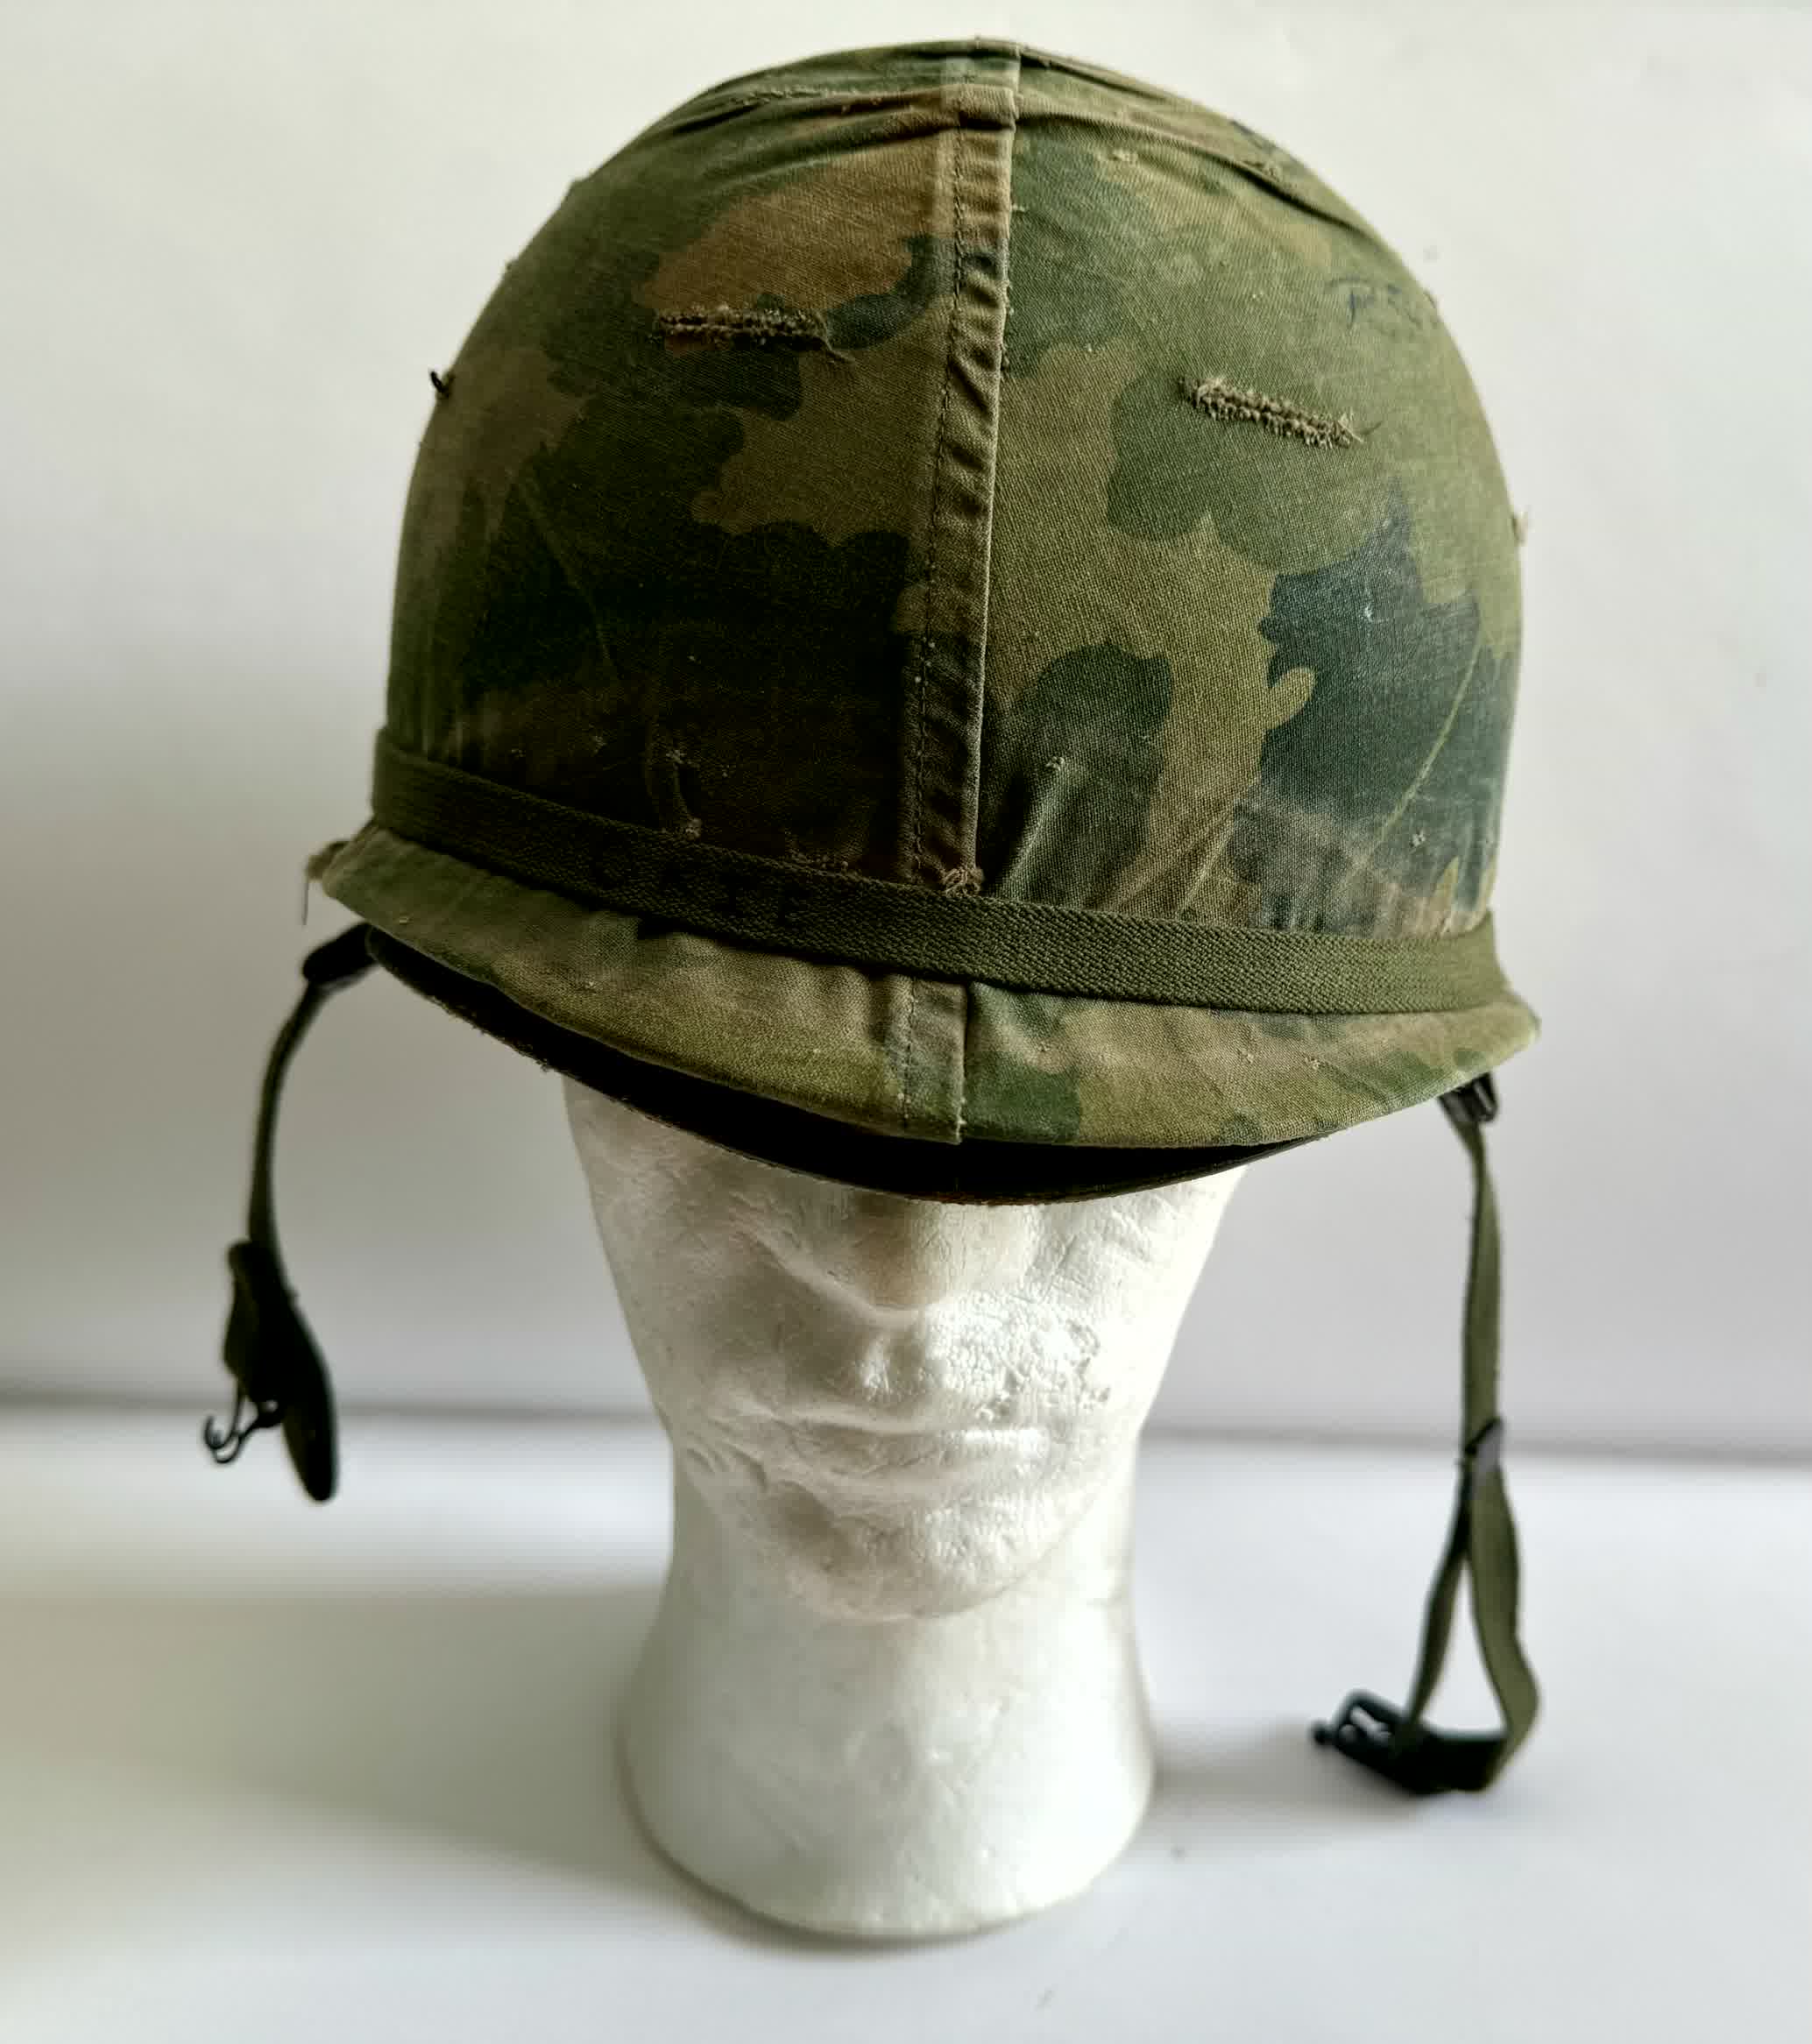 M1C Helmet (Airborne) - 1974